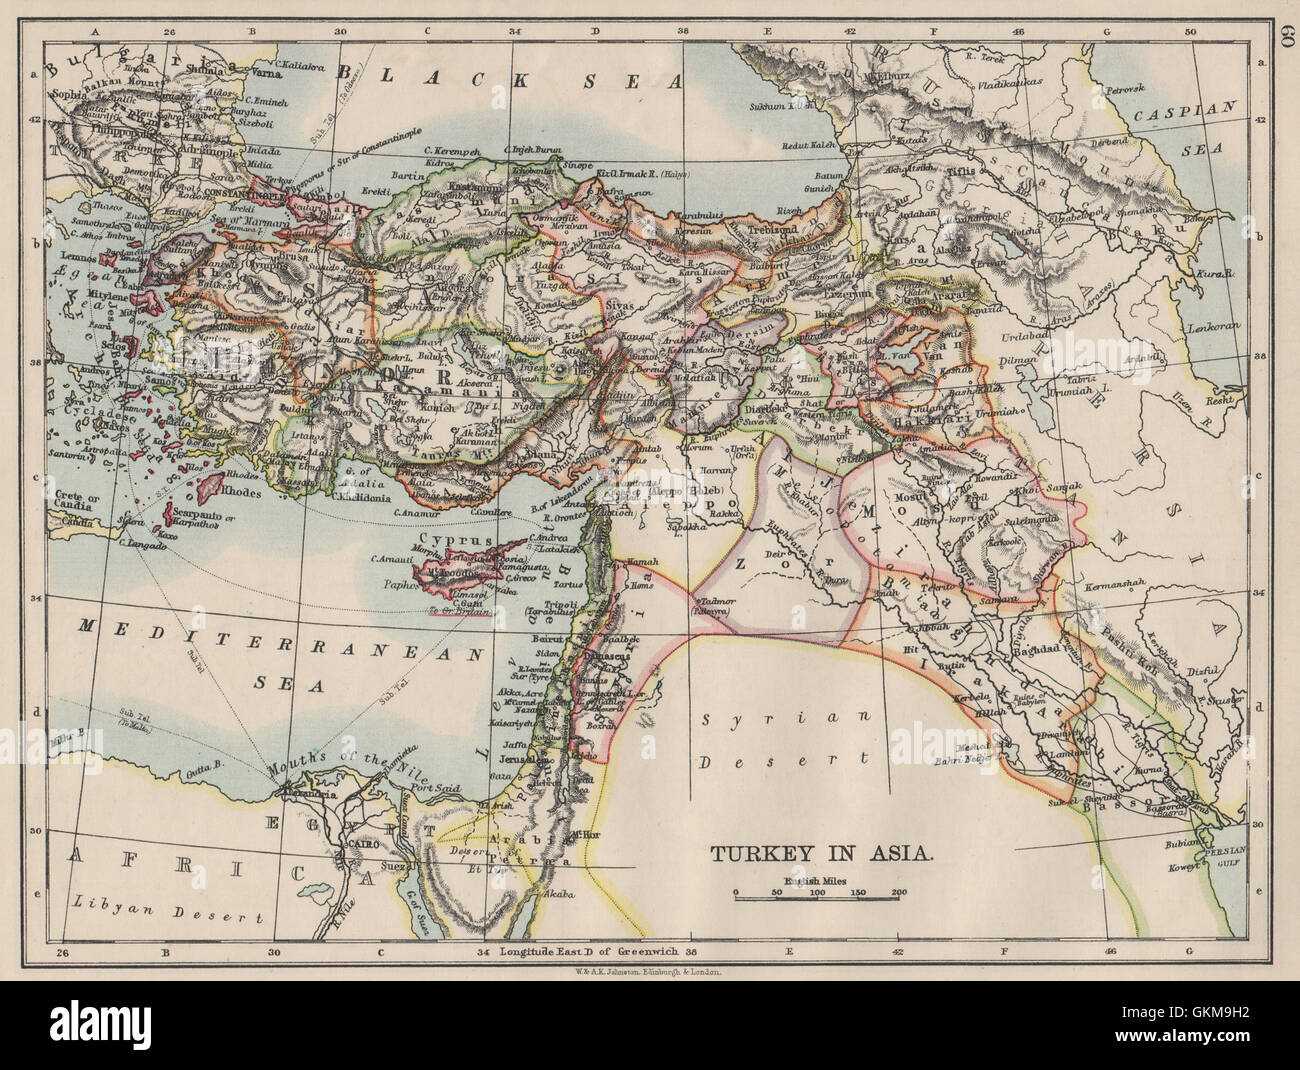 OTTOMAN TURKEY IN ASIA. Cyprus Levant Mesopotamia Palestine. JOHNSTON, 1900 map Stock Photo